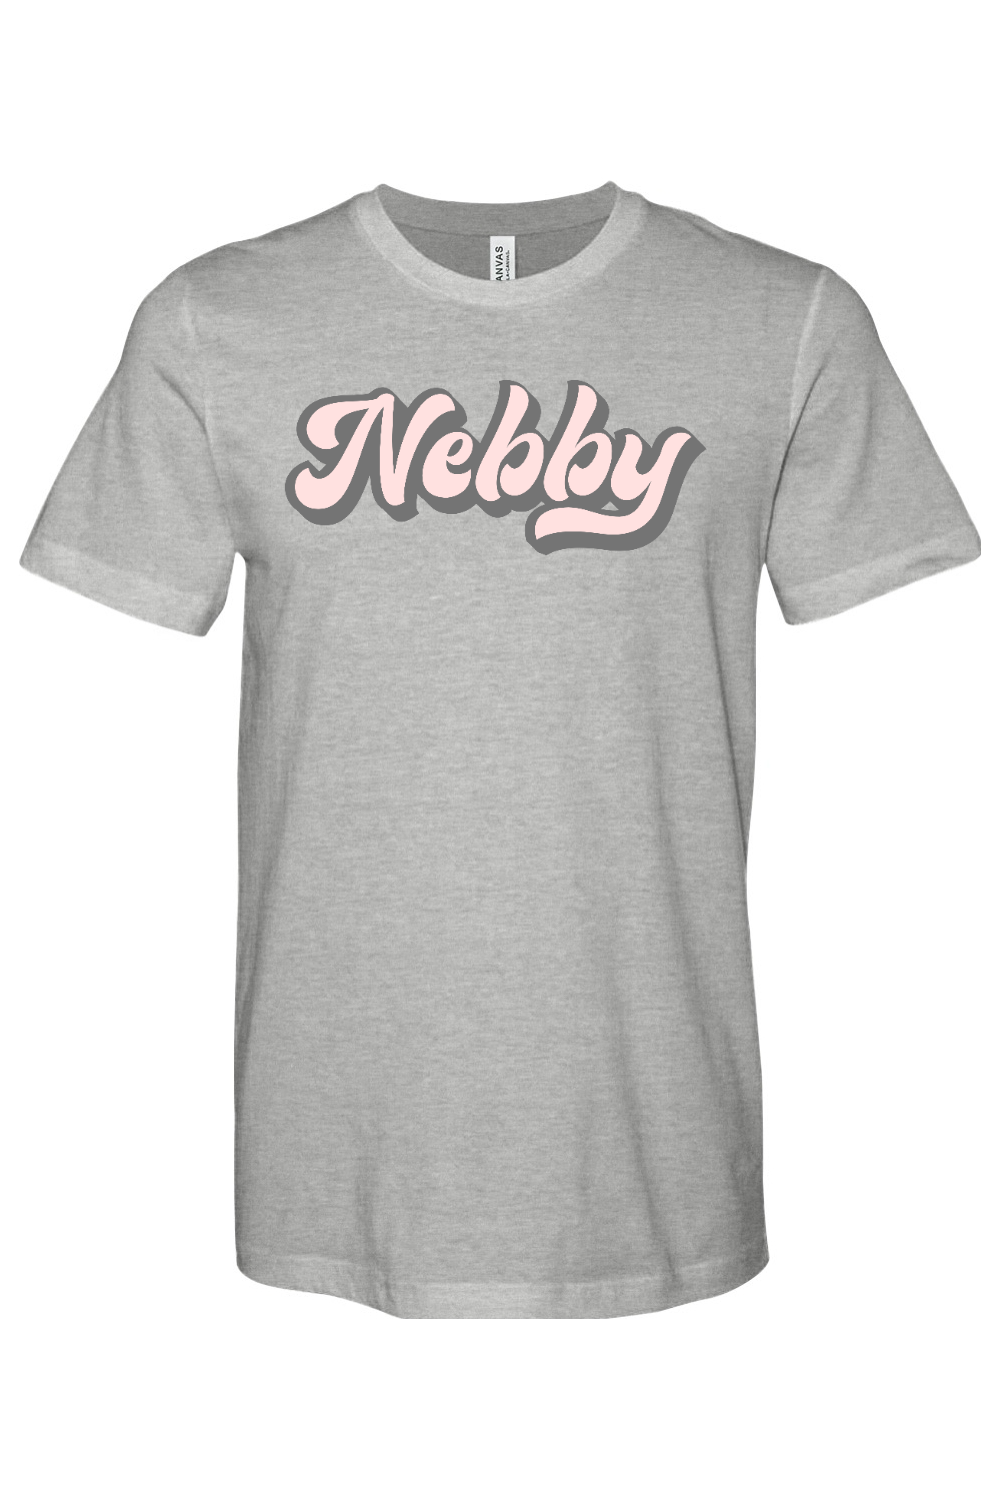 Nebby - Yinzylvania